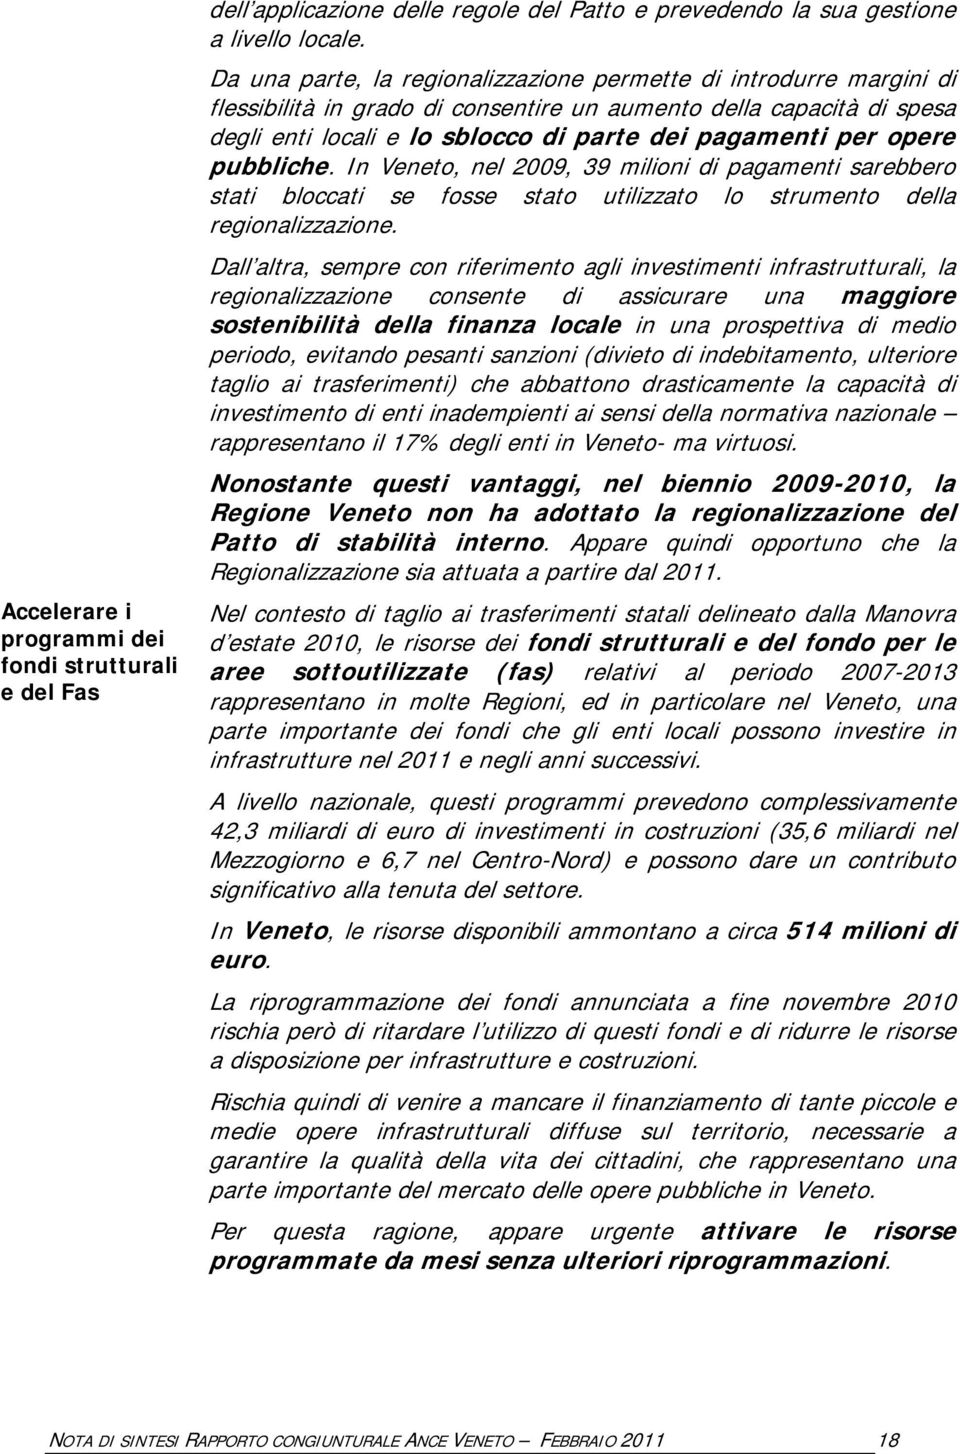 opere pubbliche. In Veneto, nel 2009, 39 milioni di pagamenti sarebbero stati bloccati se fosse stato utilizzato lo strumento della regionalizzazione.